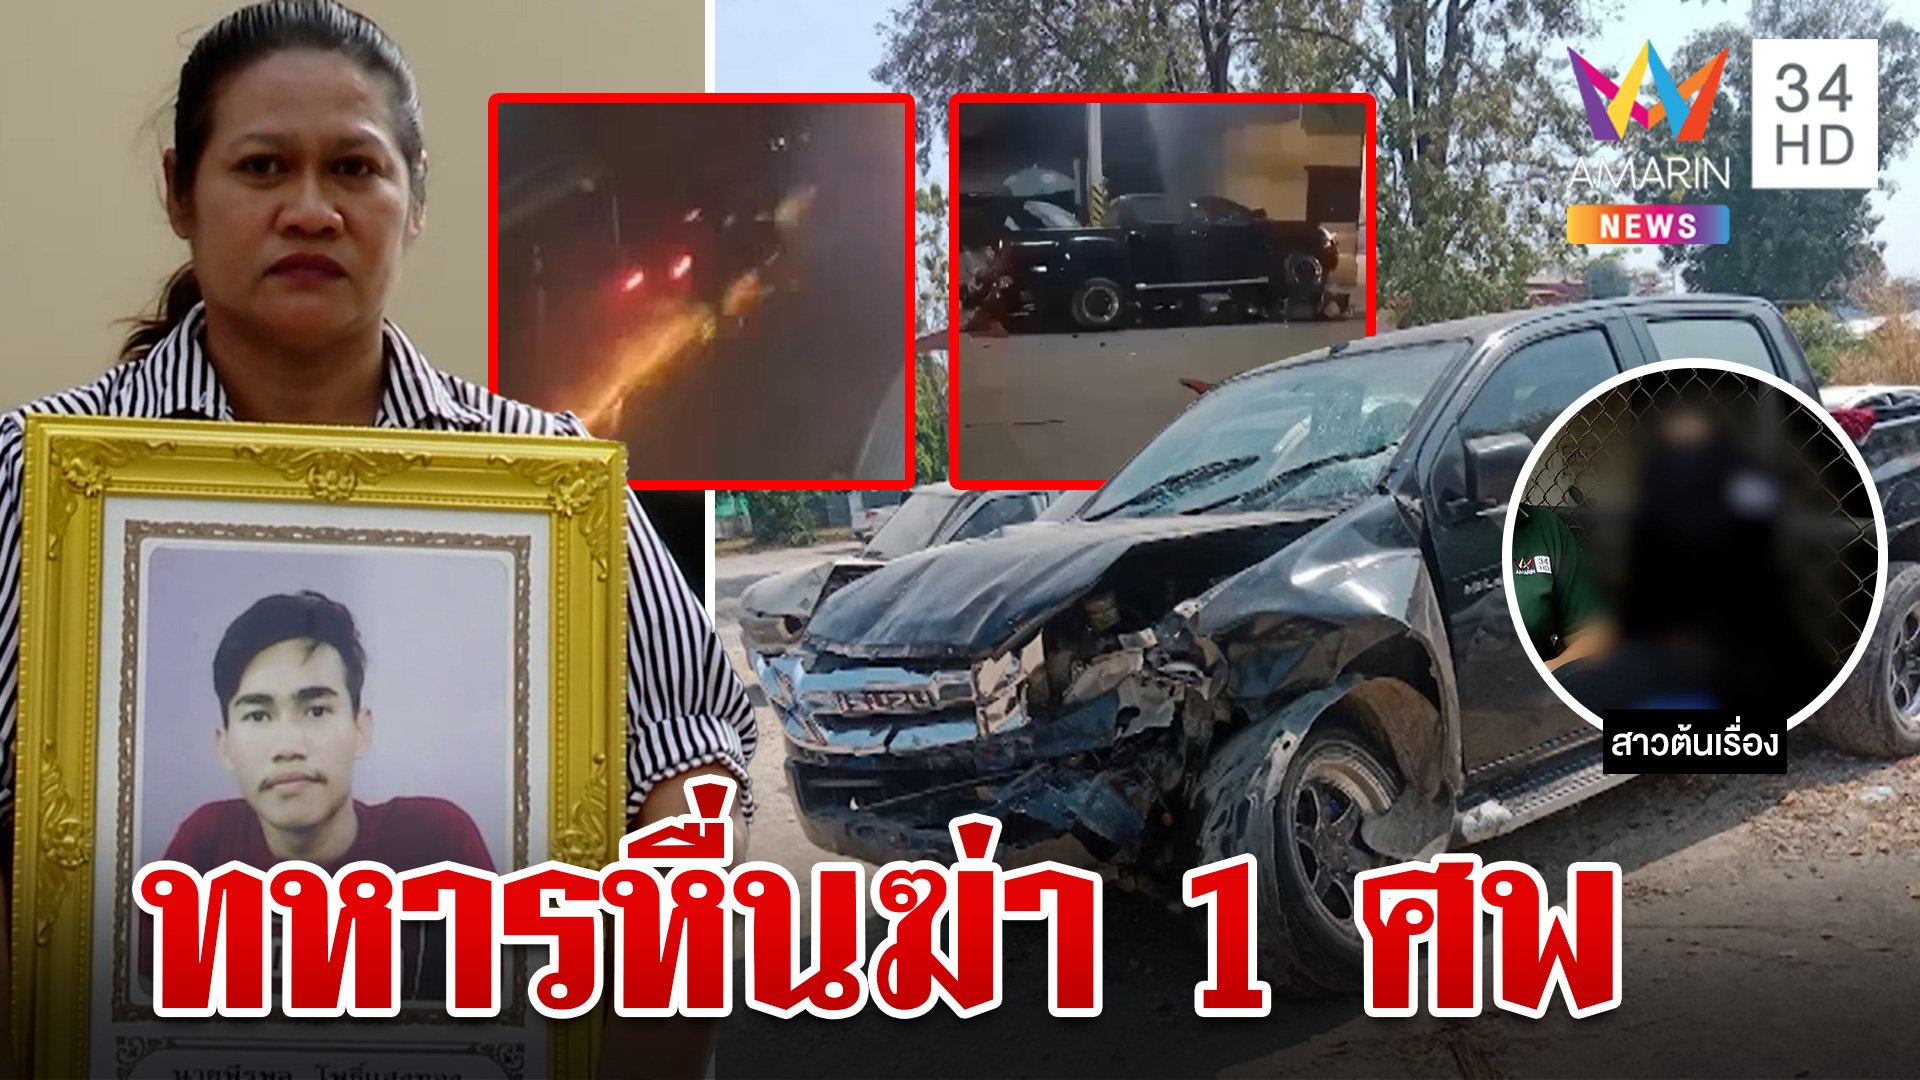 ทหารหื่นจับอกสาว ซิ่งรถเหยียบหนุ่มเข้าเคลียร์ดับ แม่แค้นสาปแลกชีวิต | ทุบโต๊ะข่าว | 6 พ.ค. 67 | AMARIN TVHD34